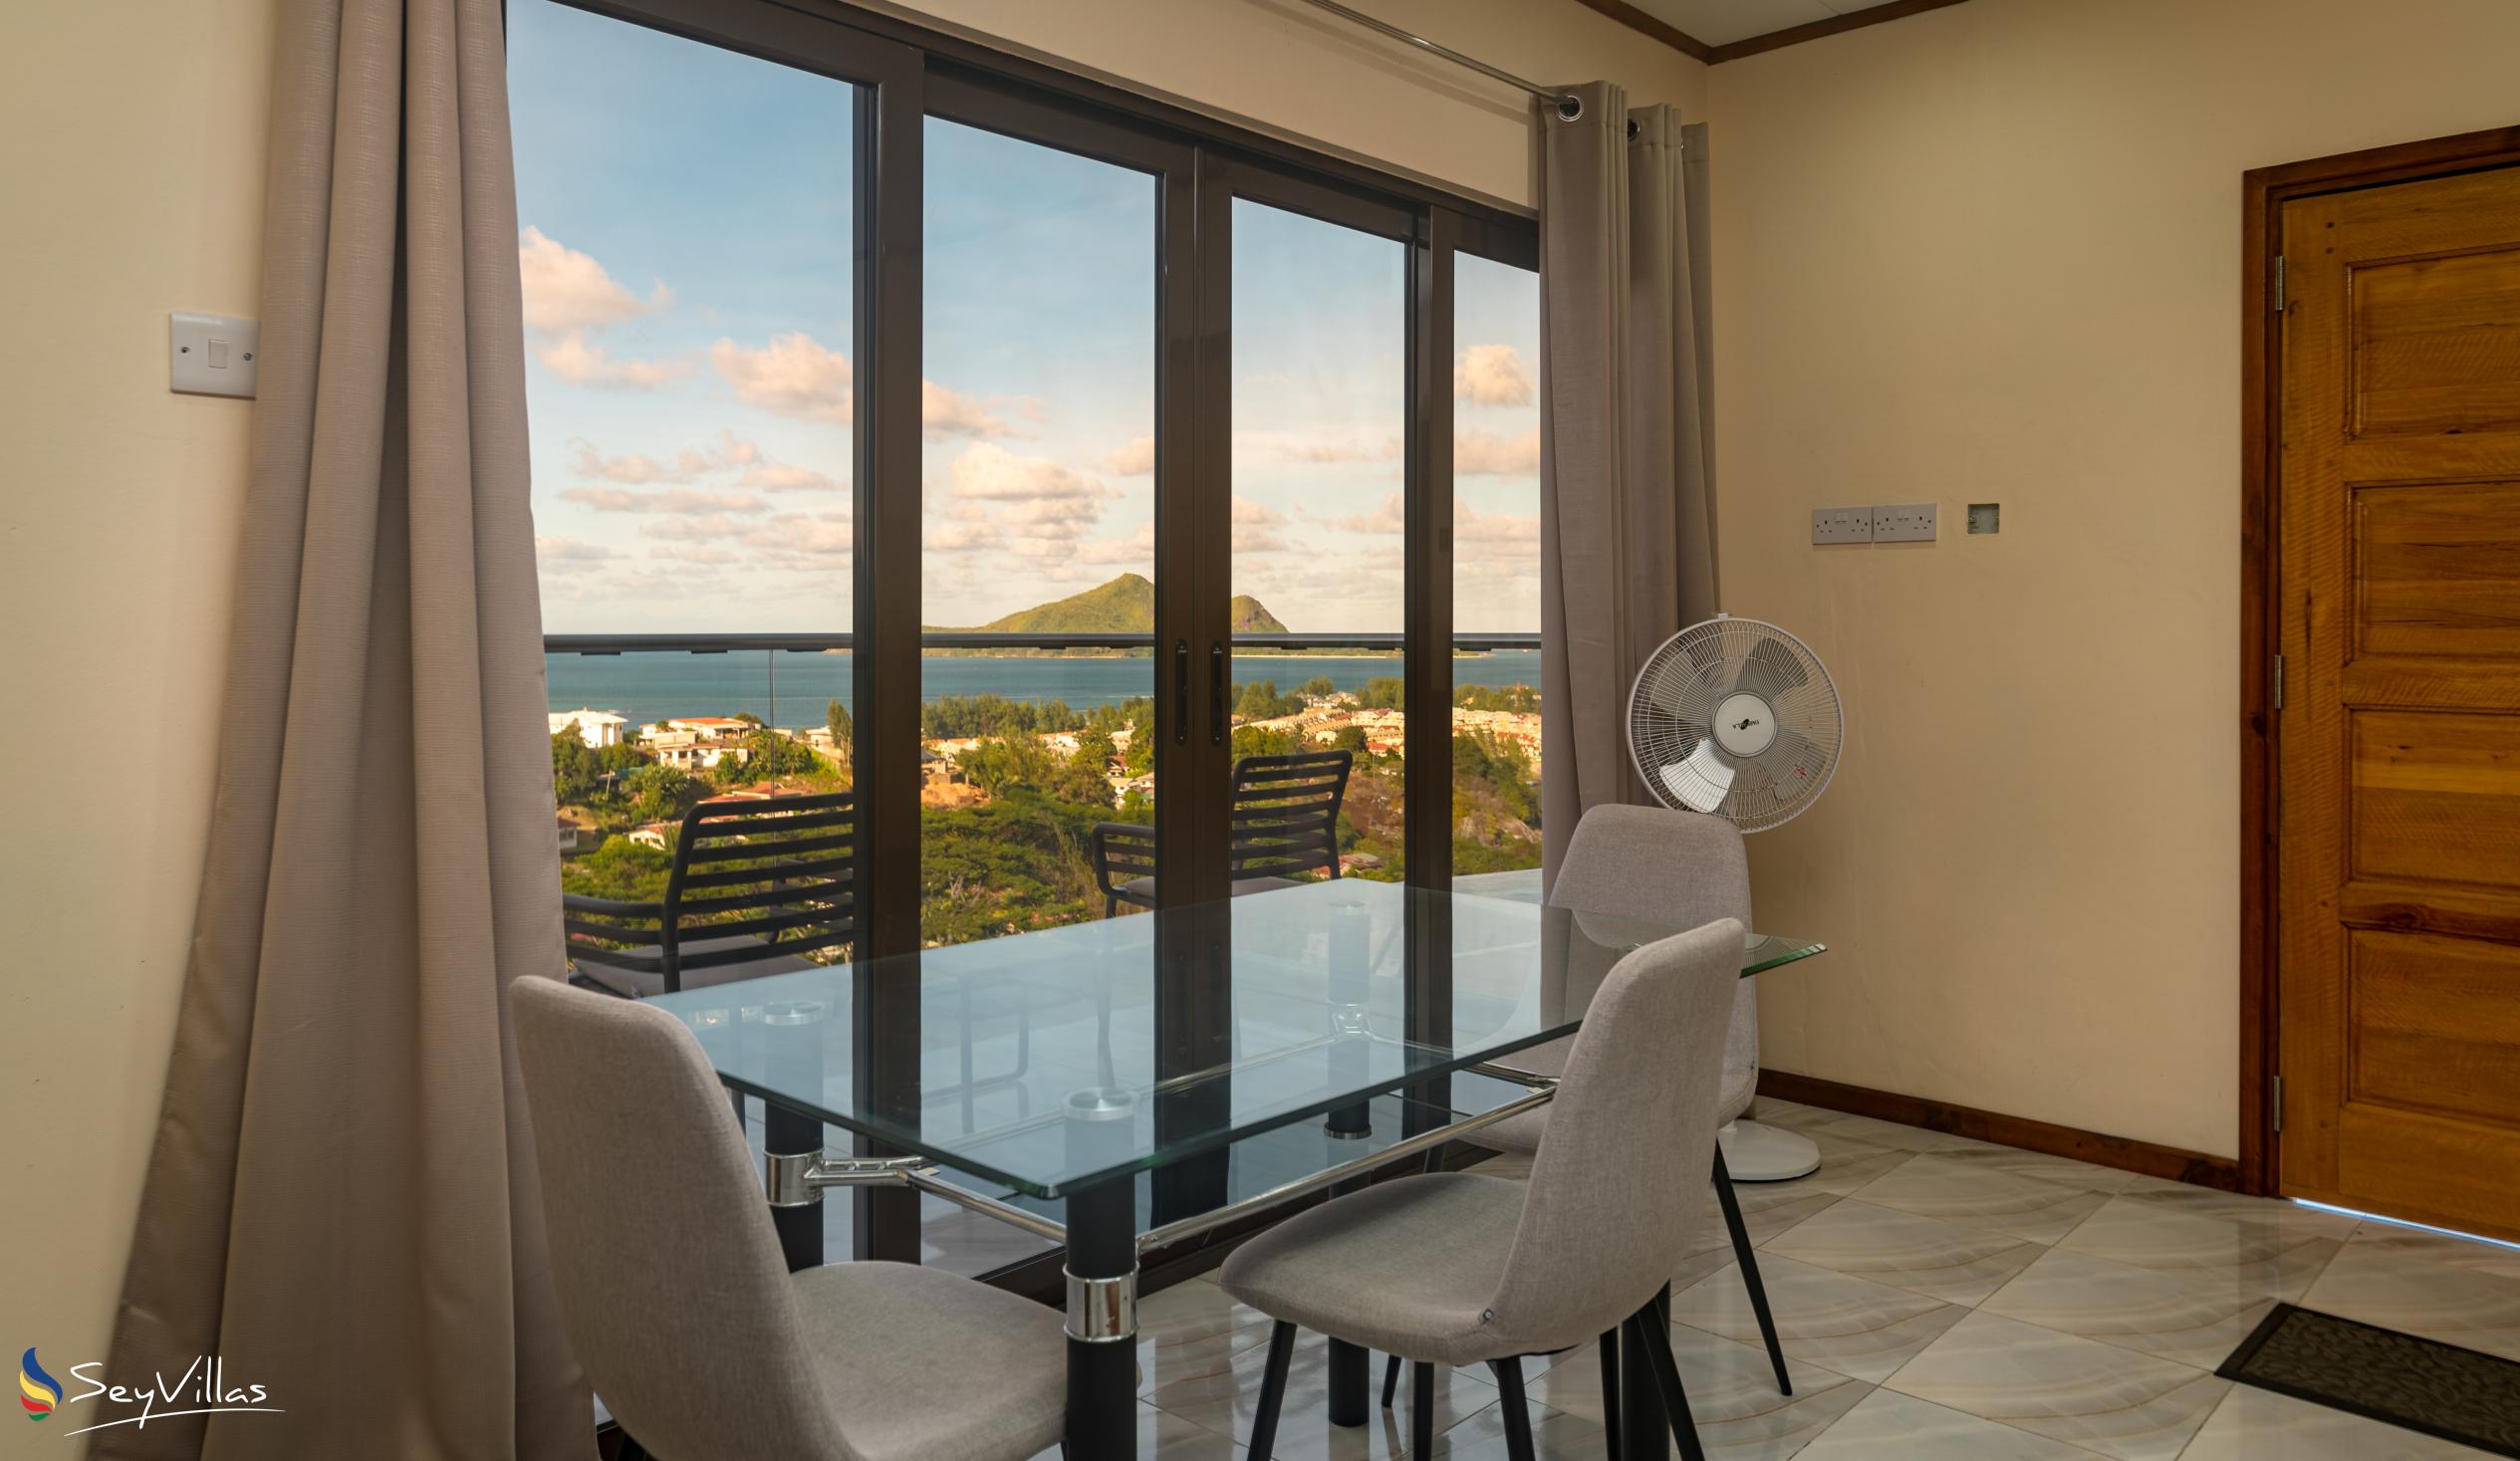 Foto 54: Maison L'Horizon - Appartement 1 chambre Lalin - Mahé (Seychelles)